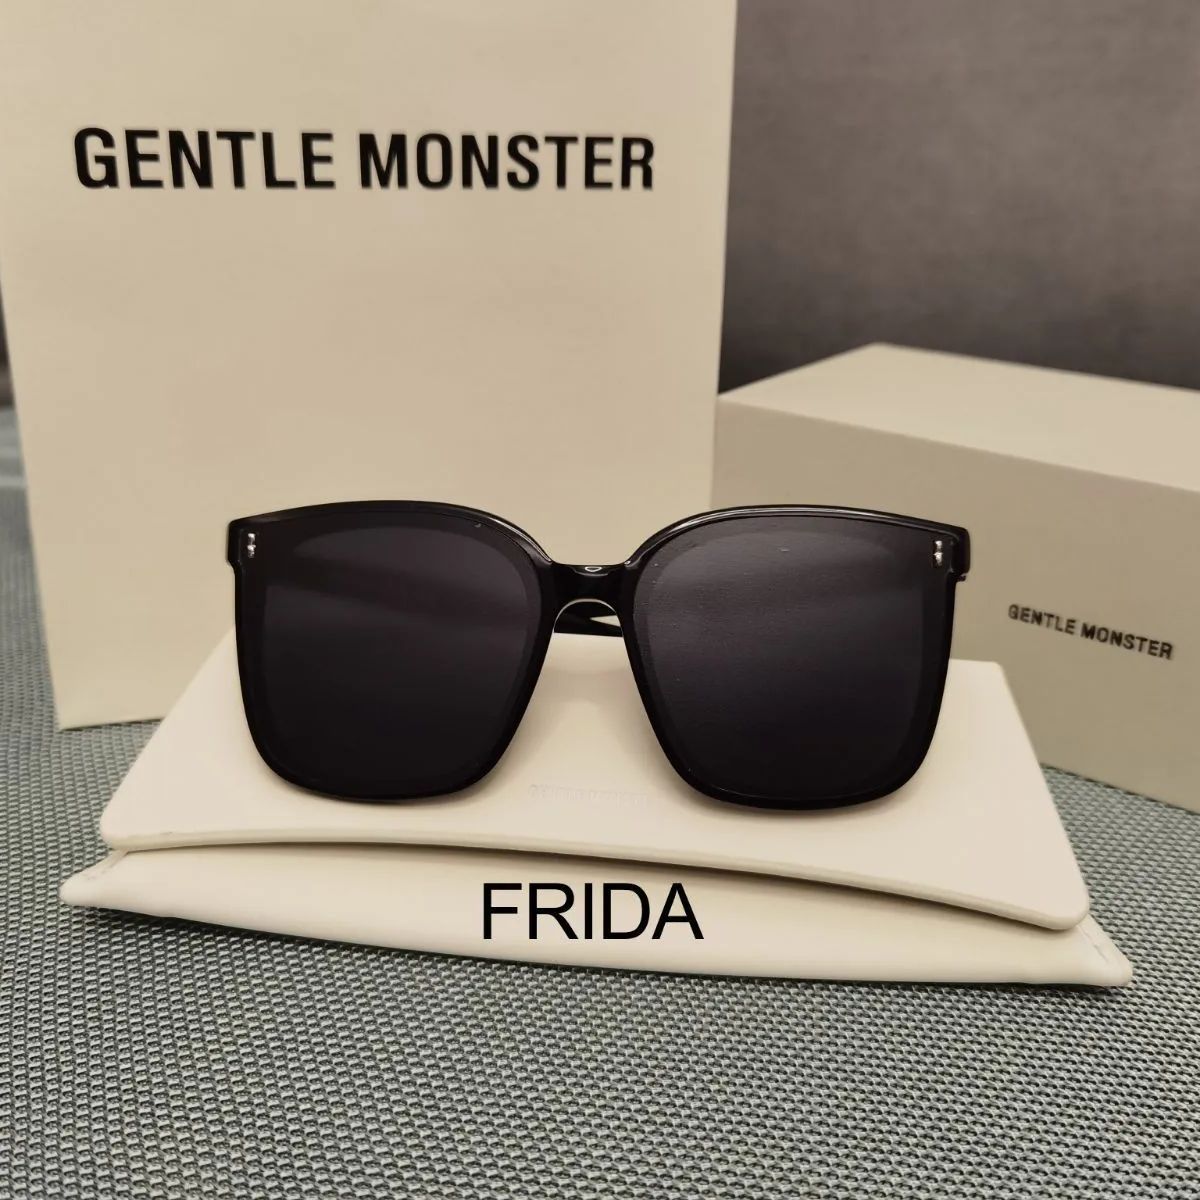 ファッション小物Gentle Monster ジェントルモンスター FRIDA サングラス